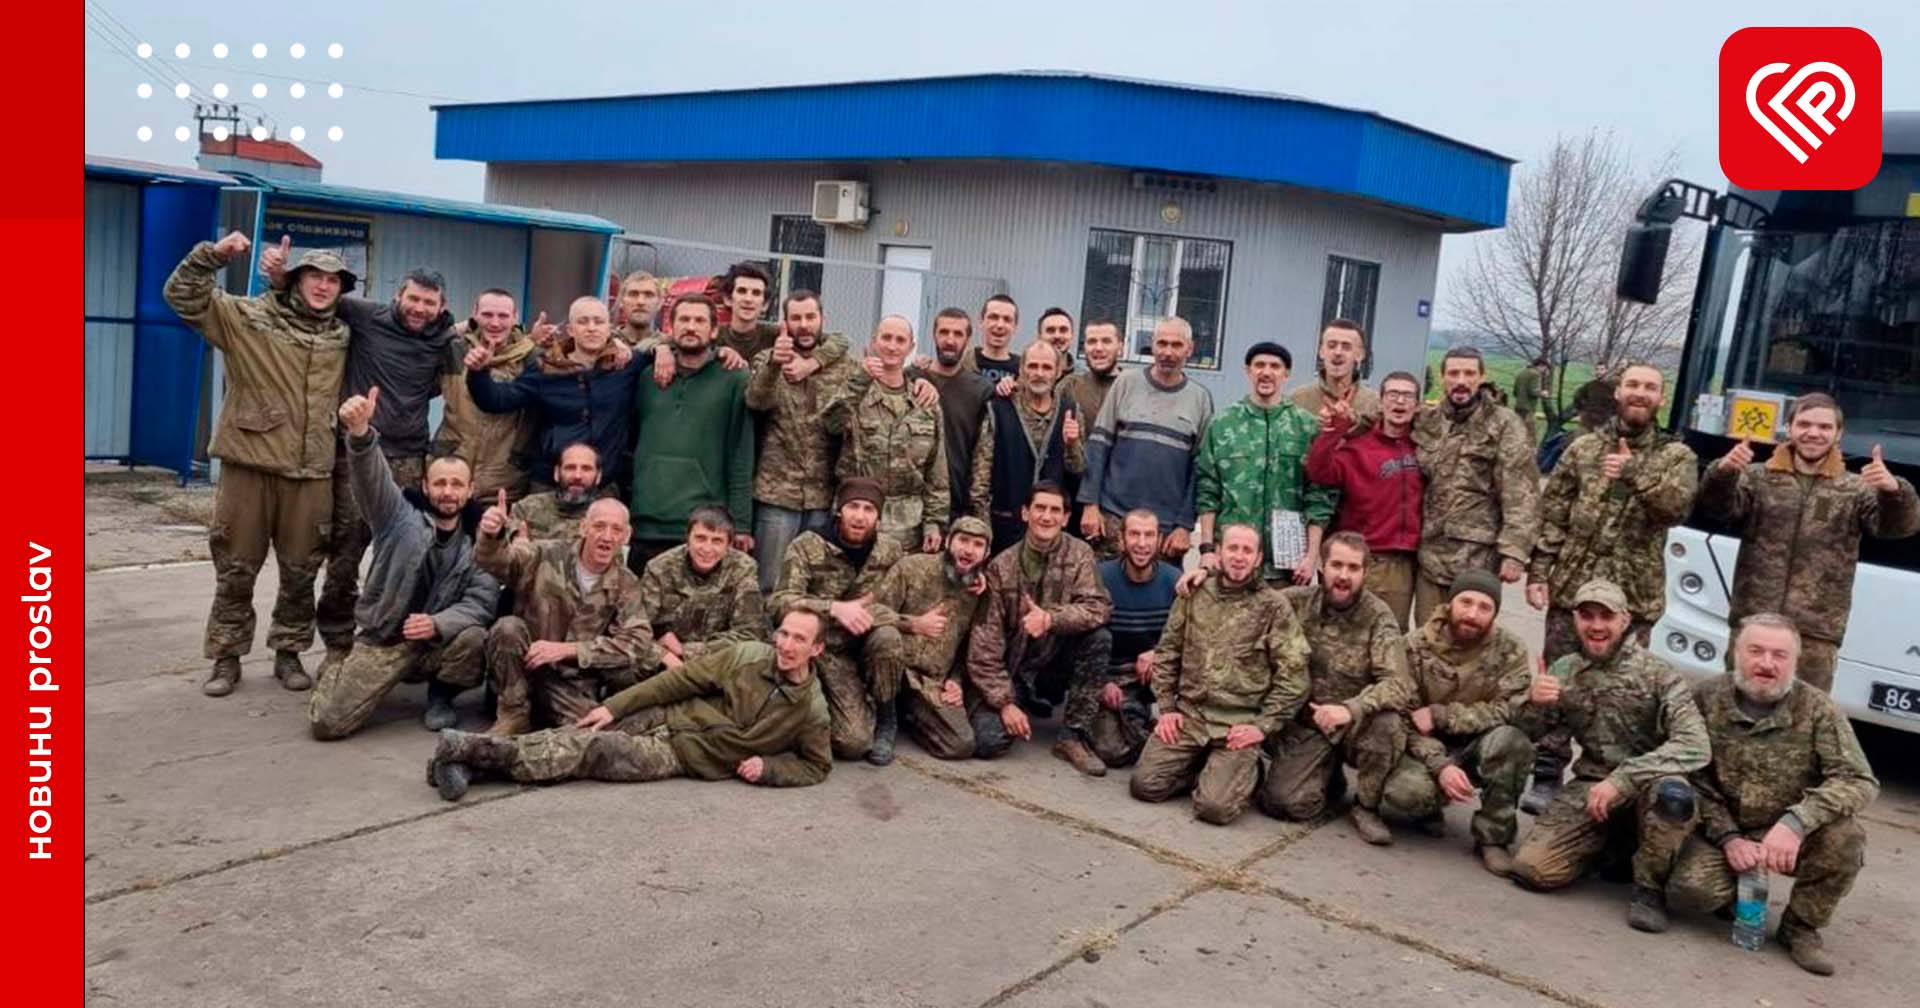 Ще 45 захисників України повернулося додому: відбувся черговий обмін полонених